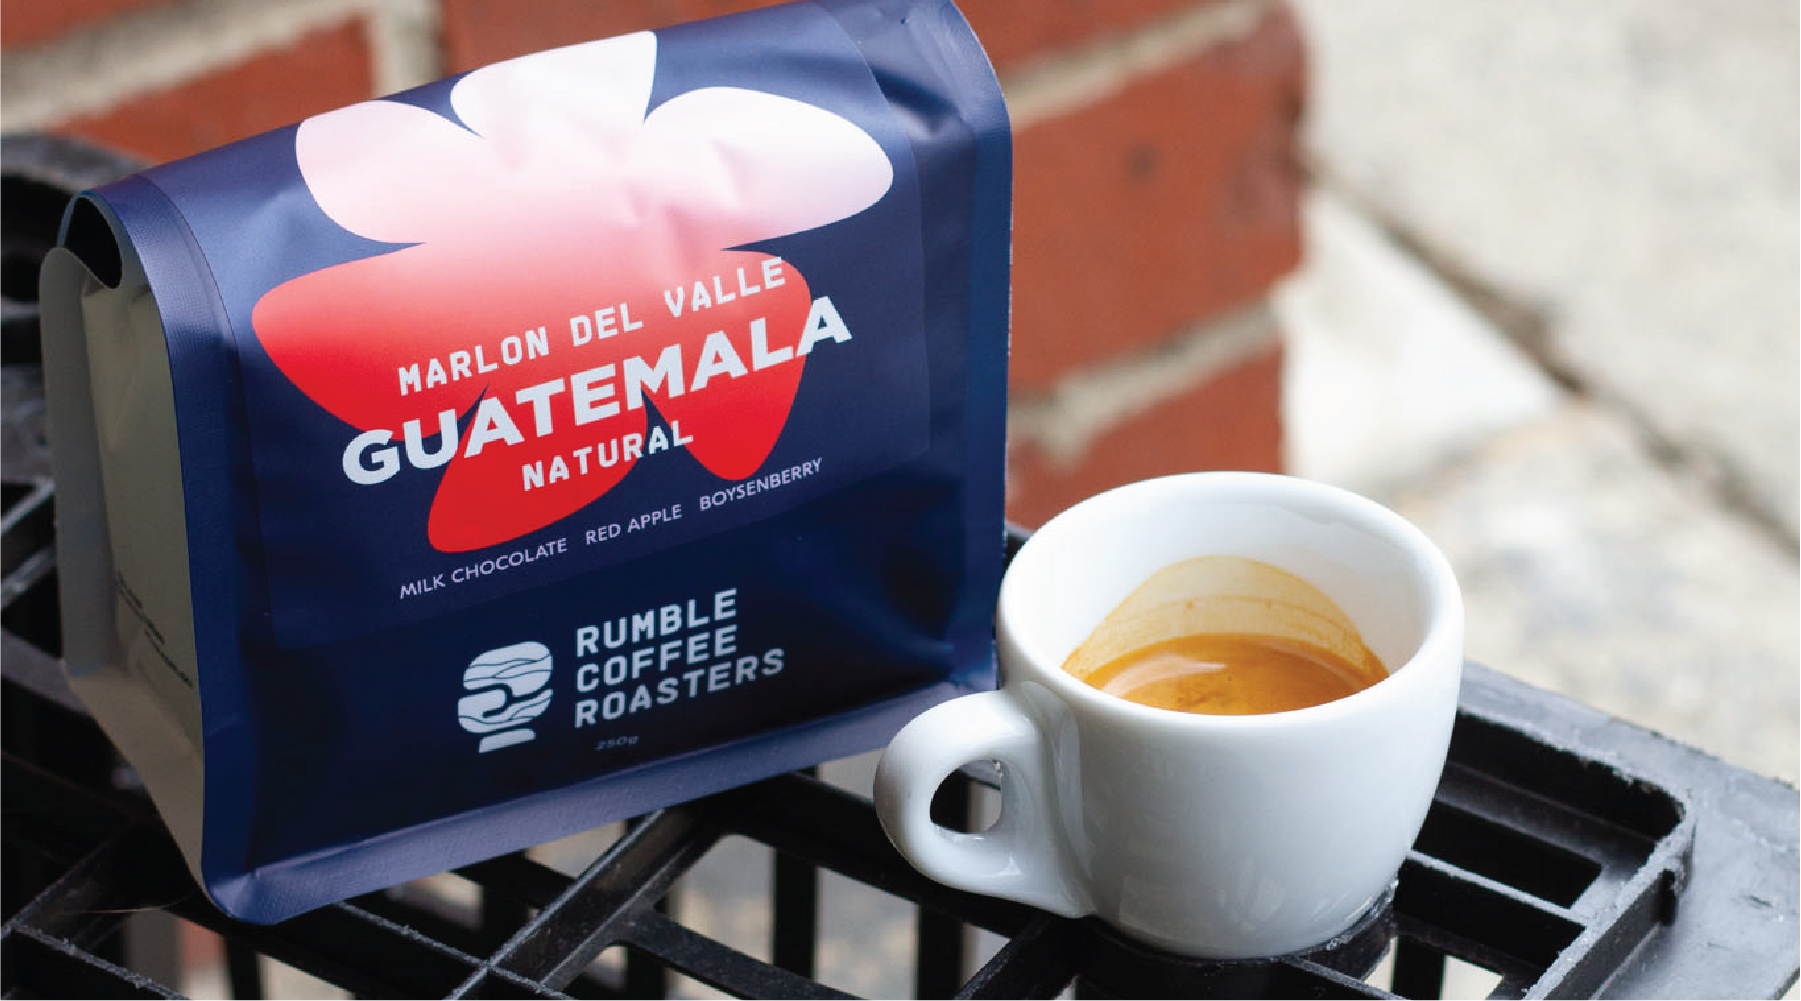 Guatemala single origin coffee from Rumble Coffee